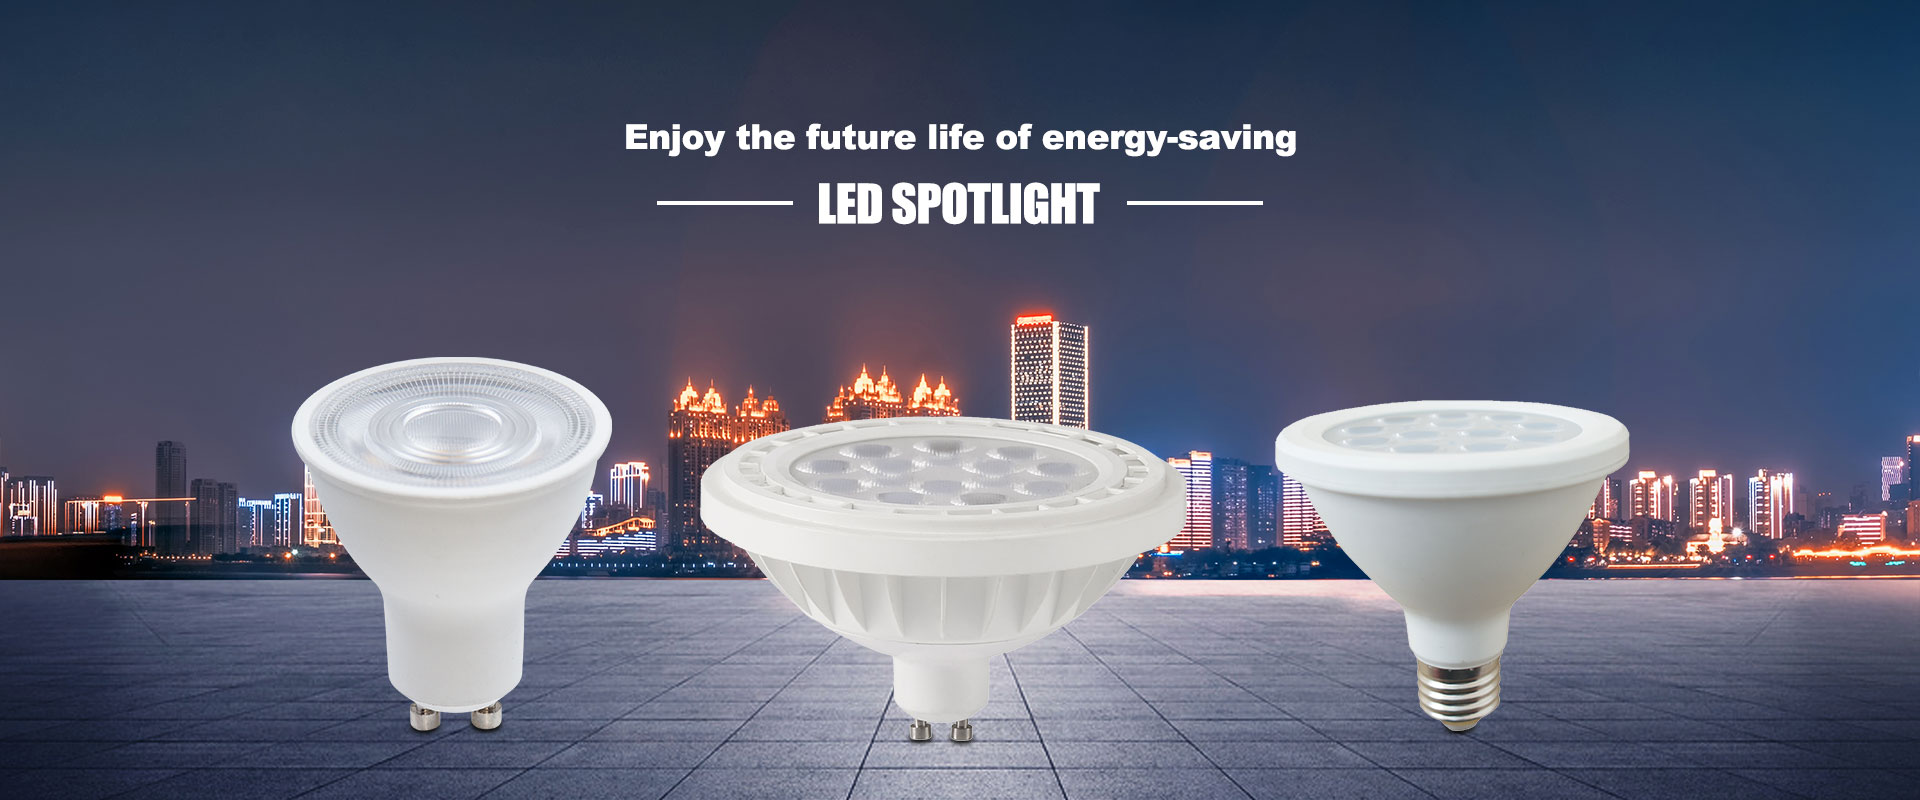 Китайская фабрика светодиодных прожекторов